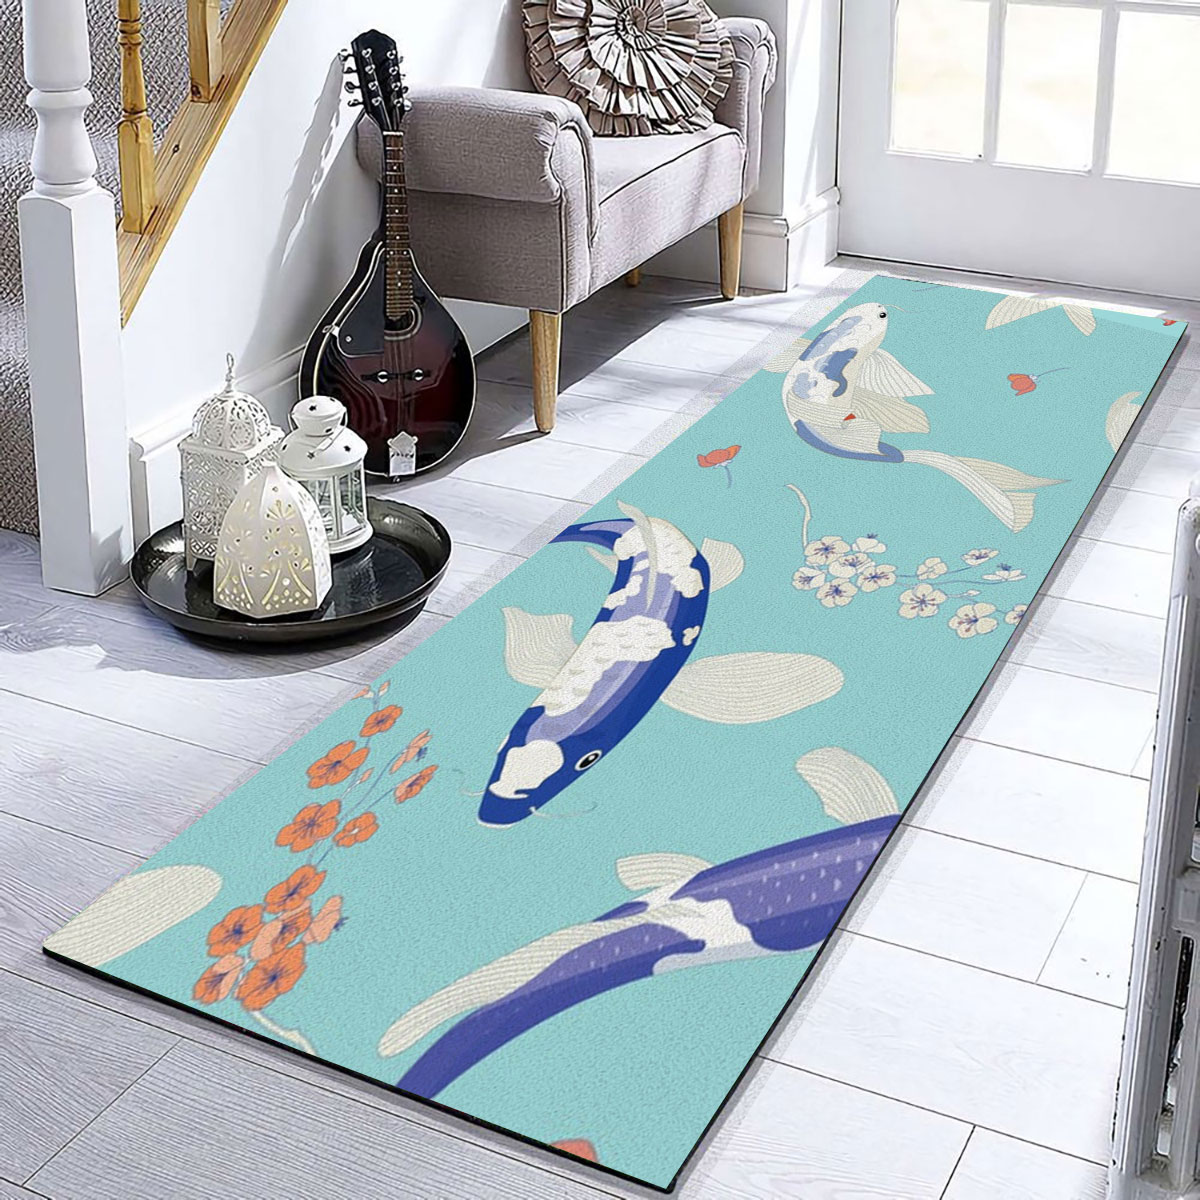 Floral Blue Koi Fish Runner Carpet